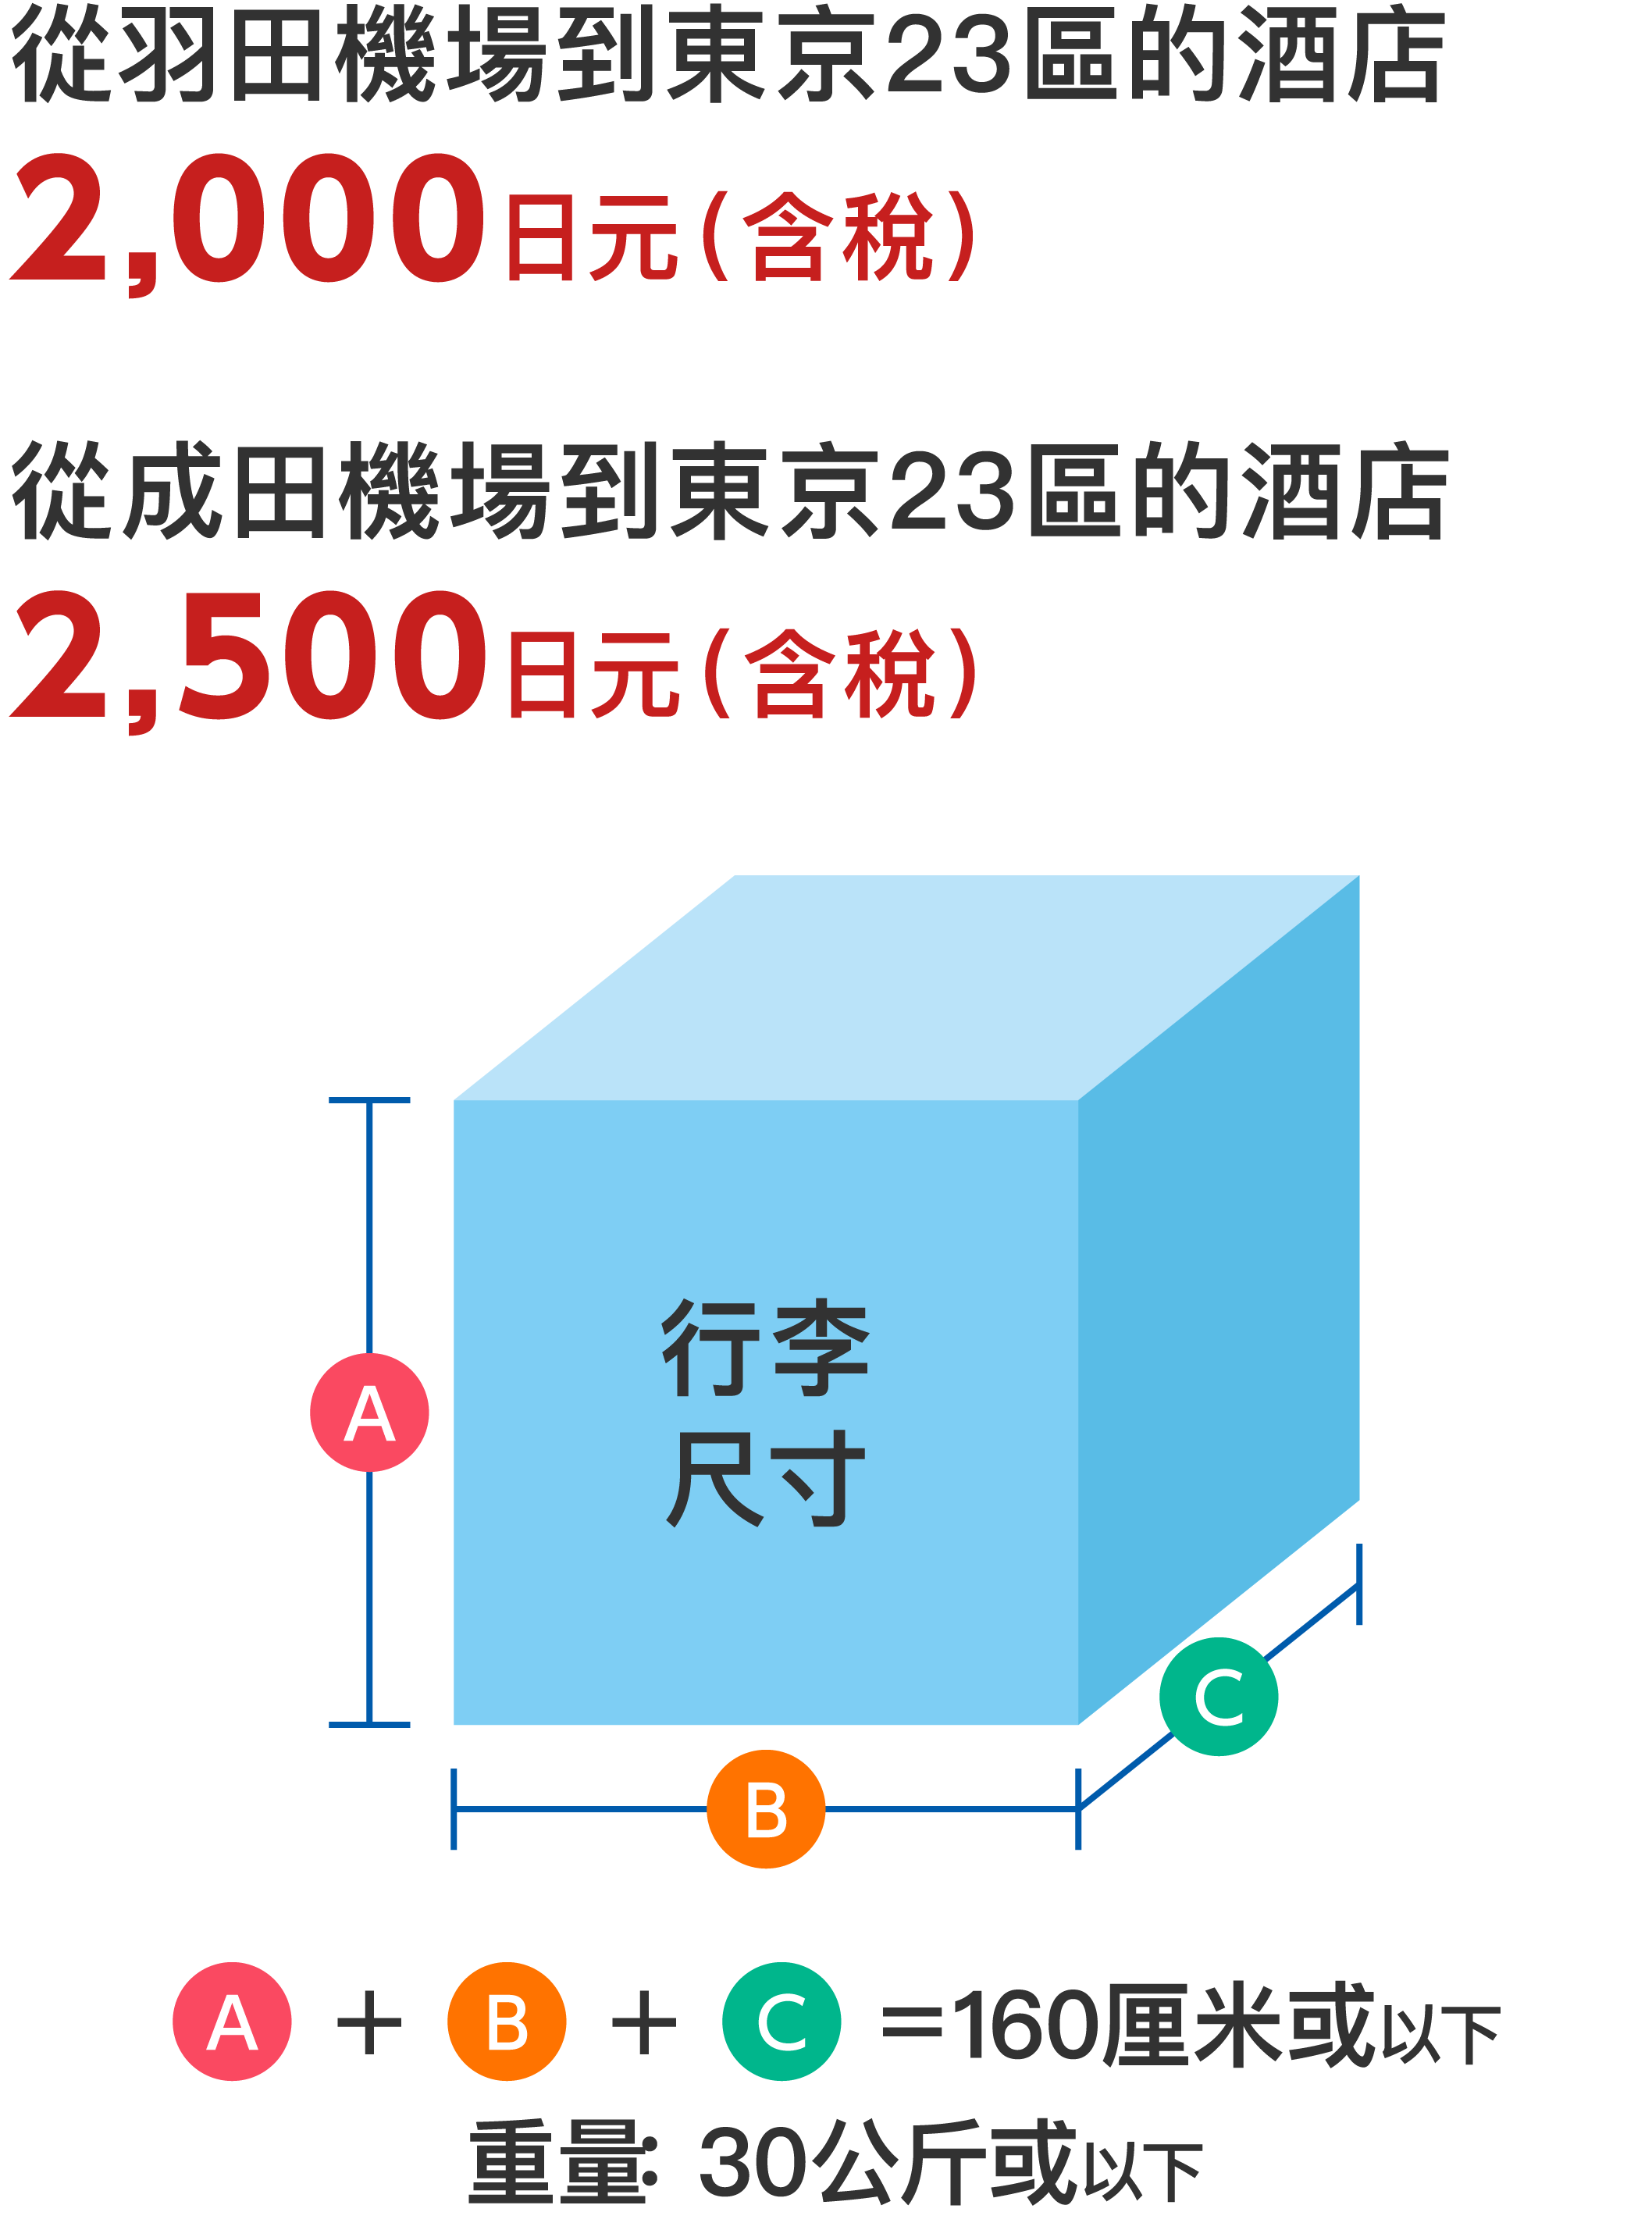 從羽田機場到東京 23 區的酒店
2,000 日元（含稅）
從成田機場到東京 23 區的酒店
2,500 日元（含稅）